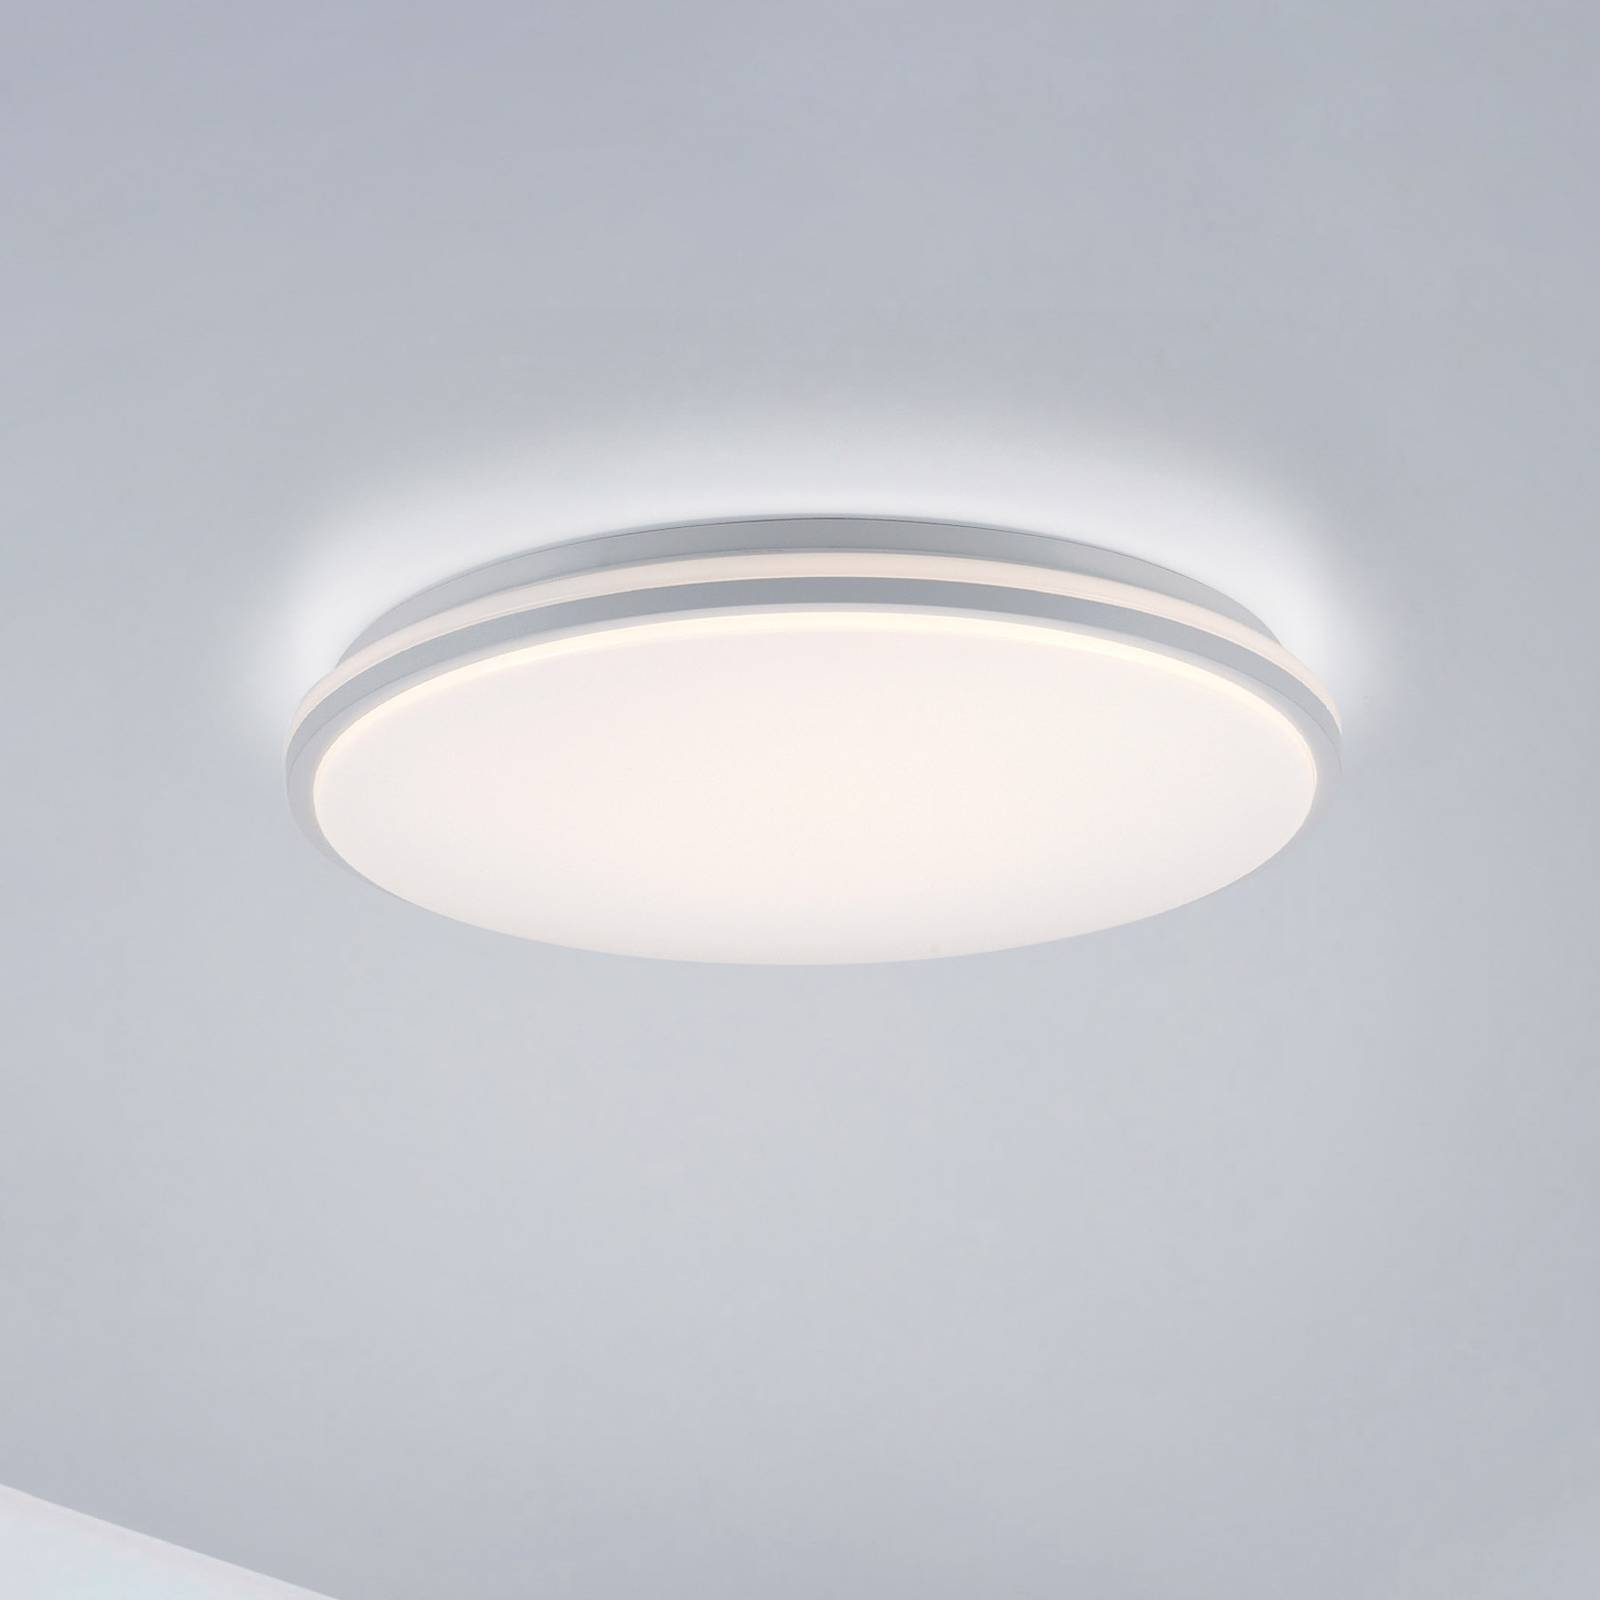 LED lámpa Colin, 3 fok. fényerő, Ø 49 cm